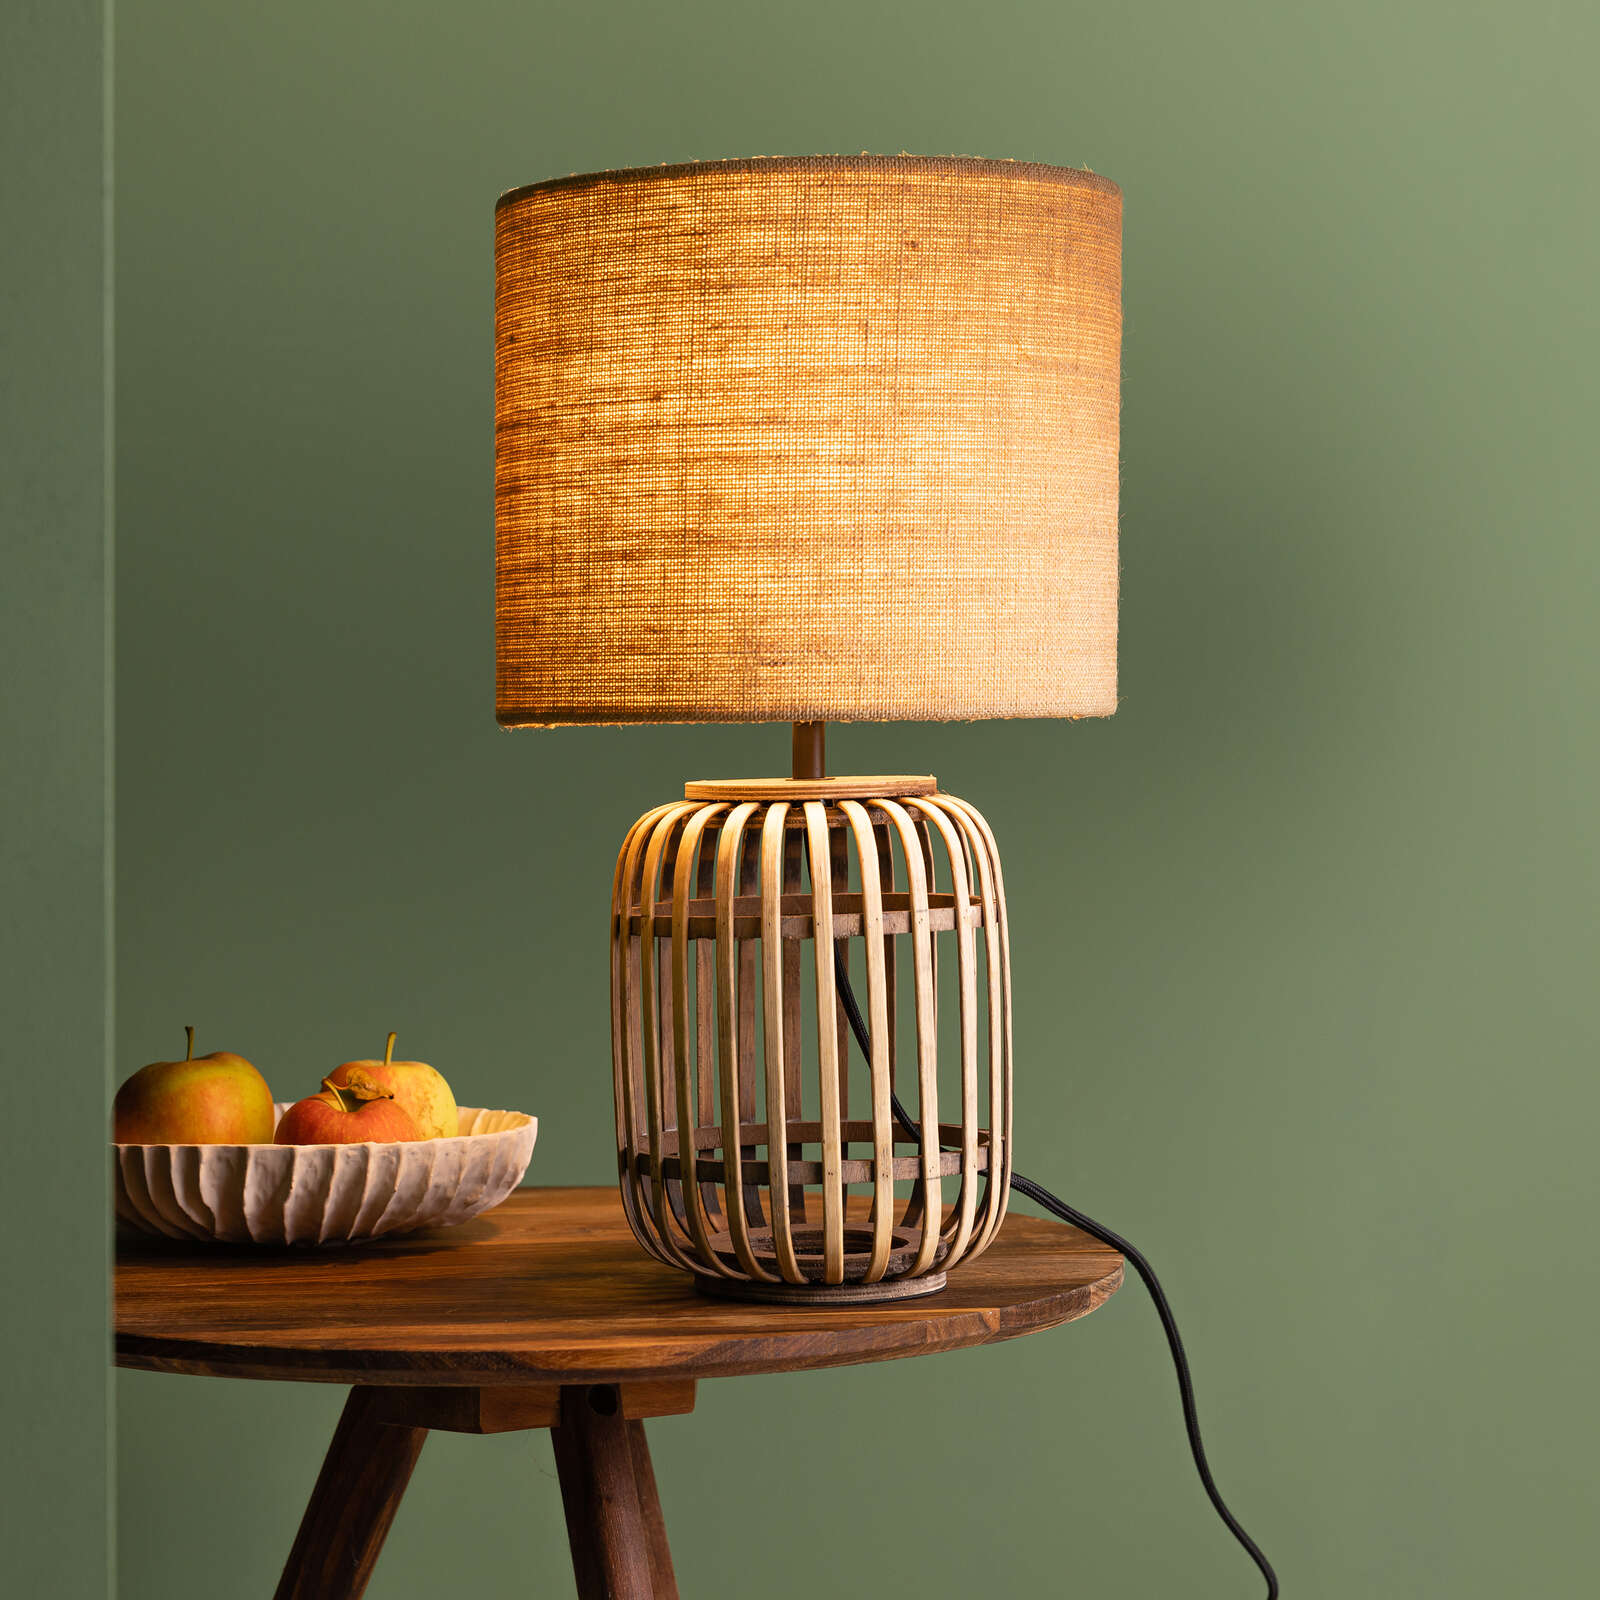             Lámpara de mesa de bambú - Willi 1 - Marrón
        